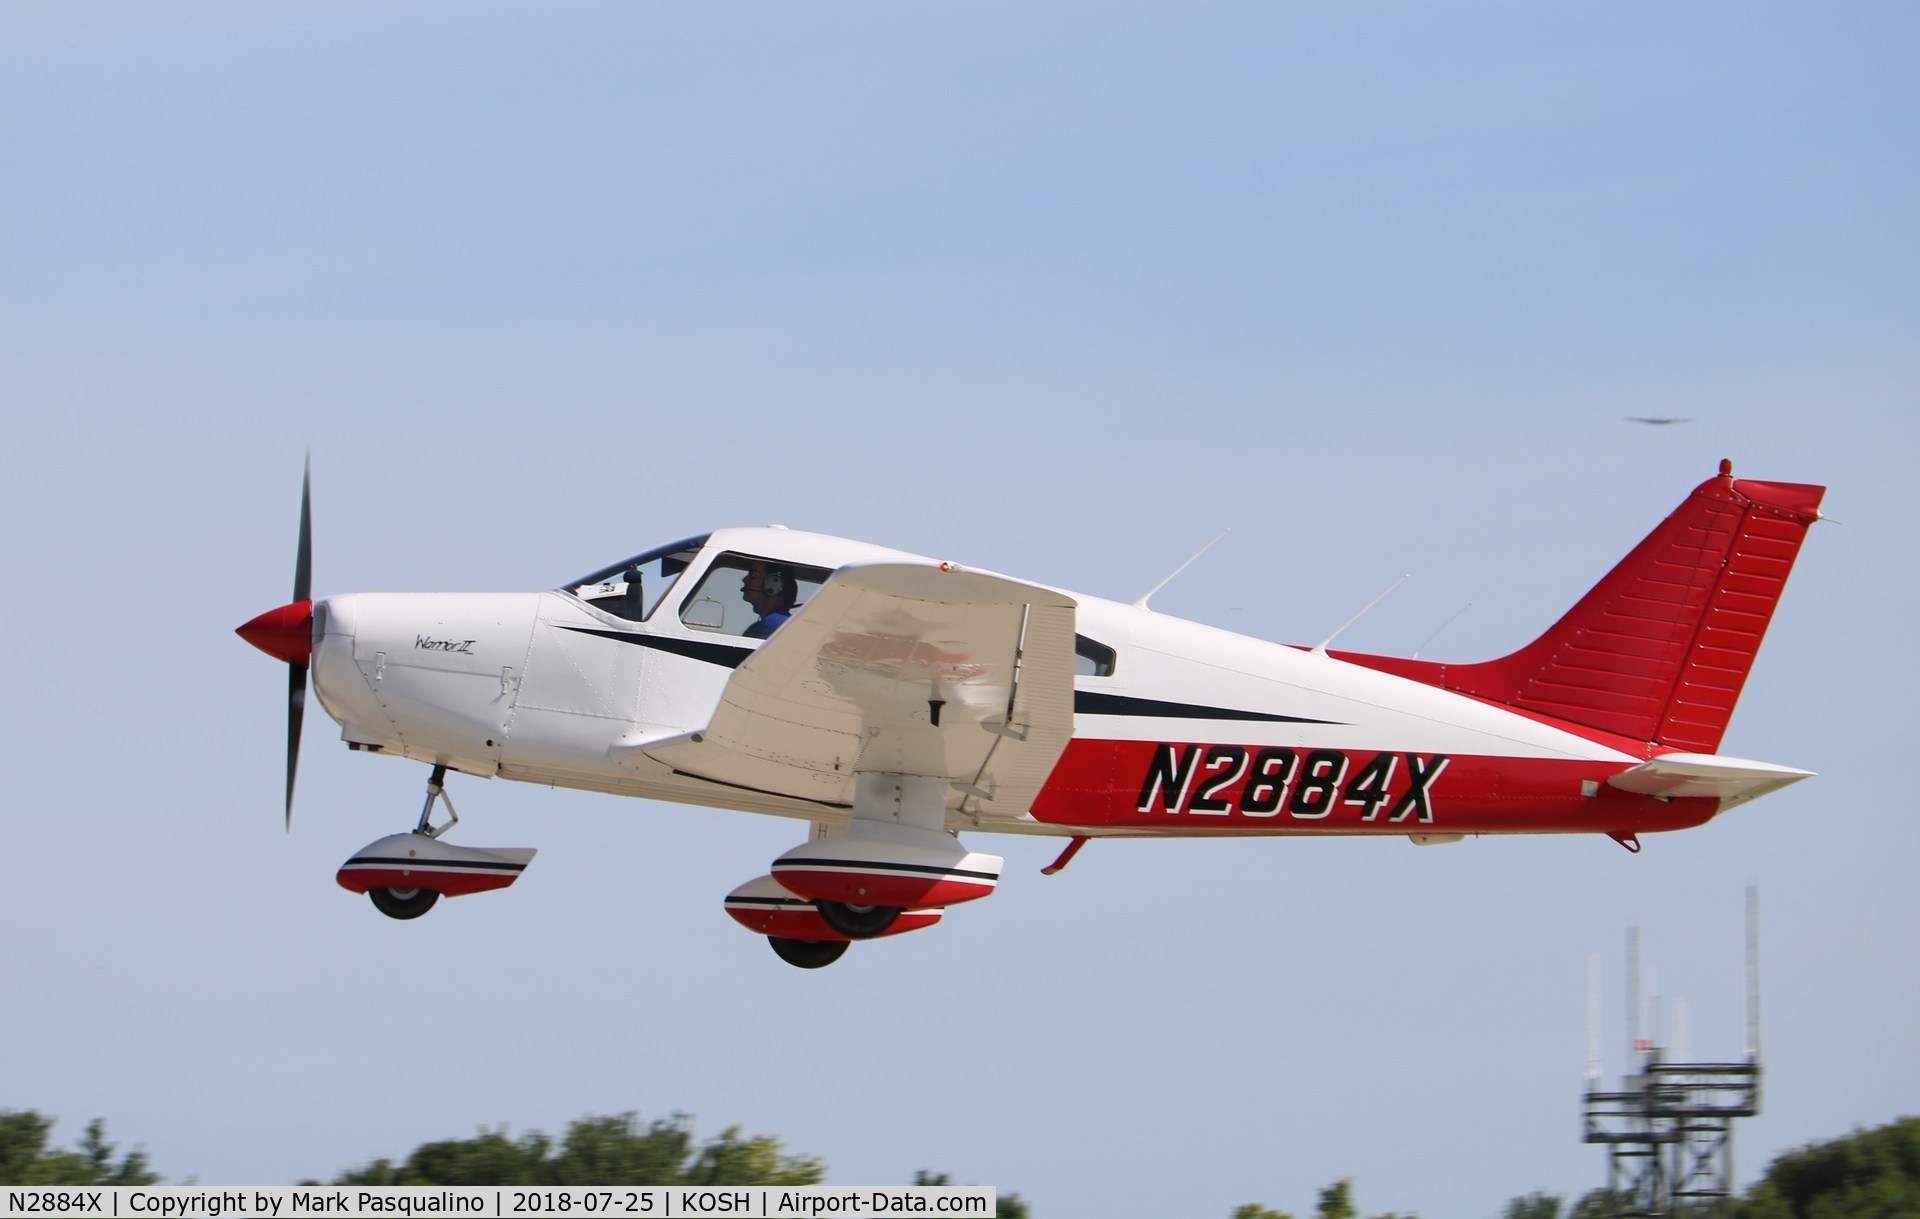 N2884X, 1979 Piper PA-28-161 Warrior II C/N 28-7916511, Piper PA-28-161